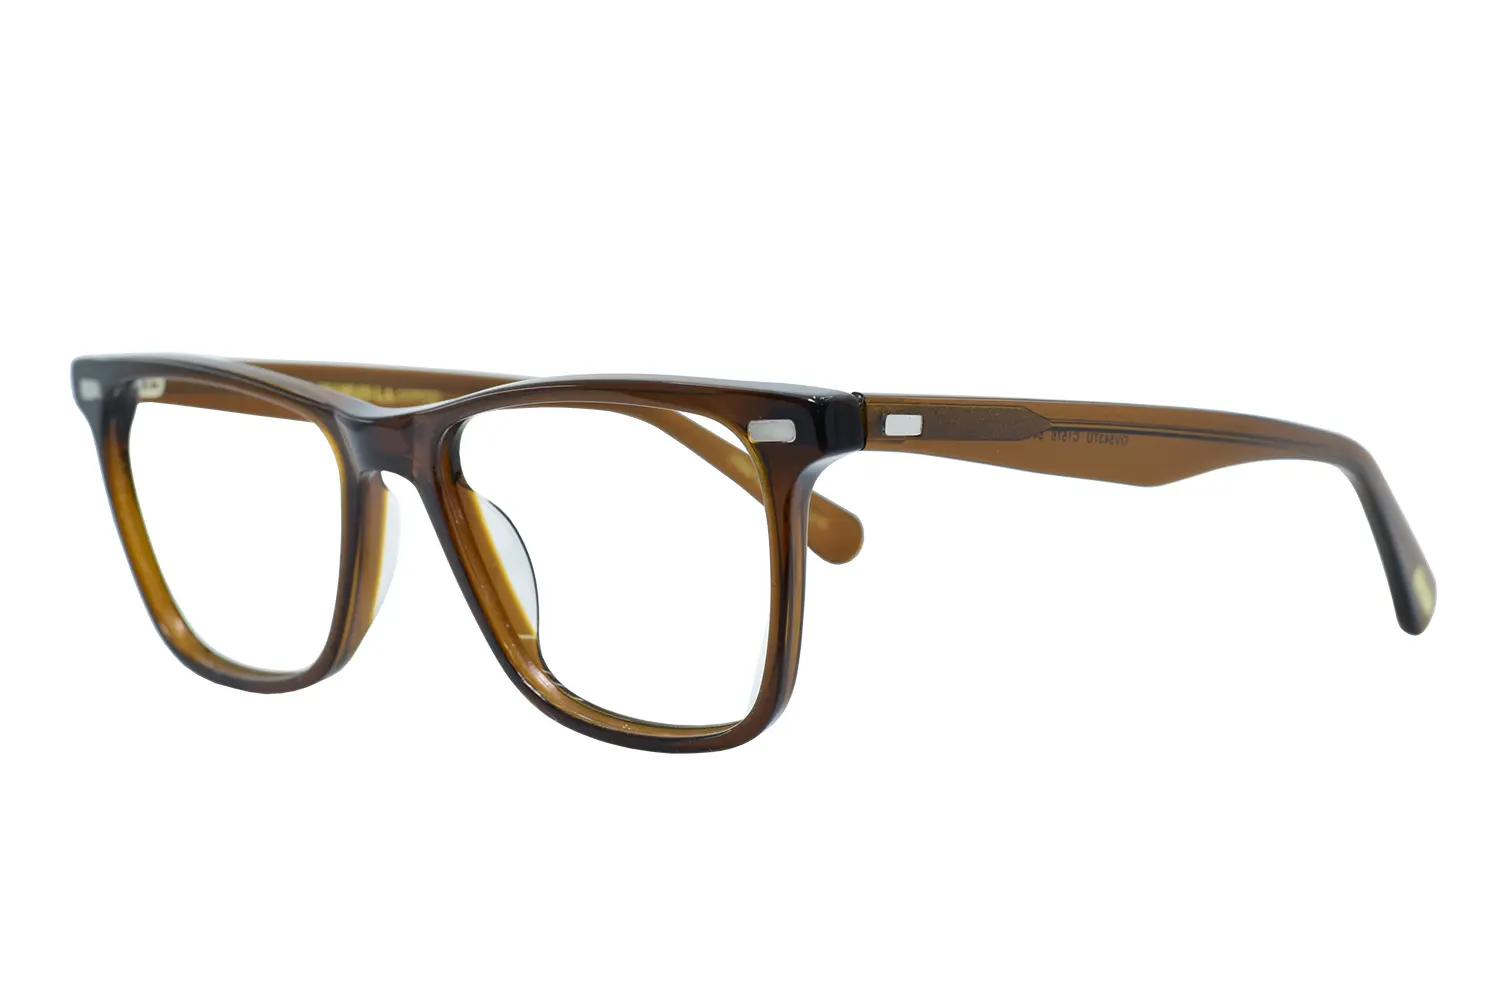 عینک طبی oliver people مدل ov5437u c1576 - دکترعینک